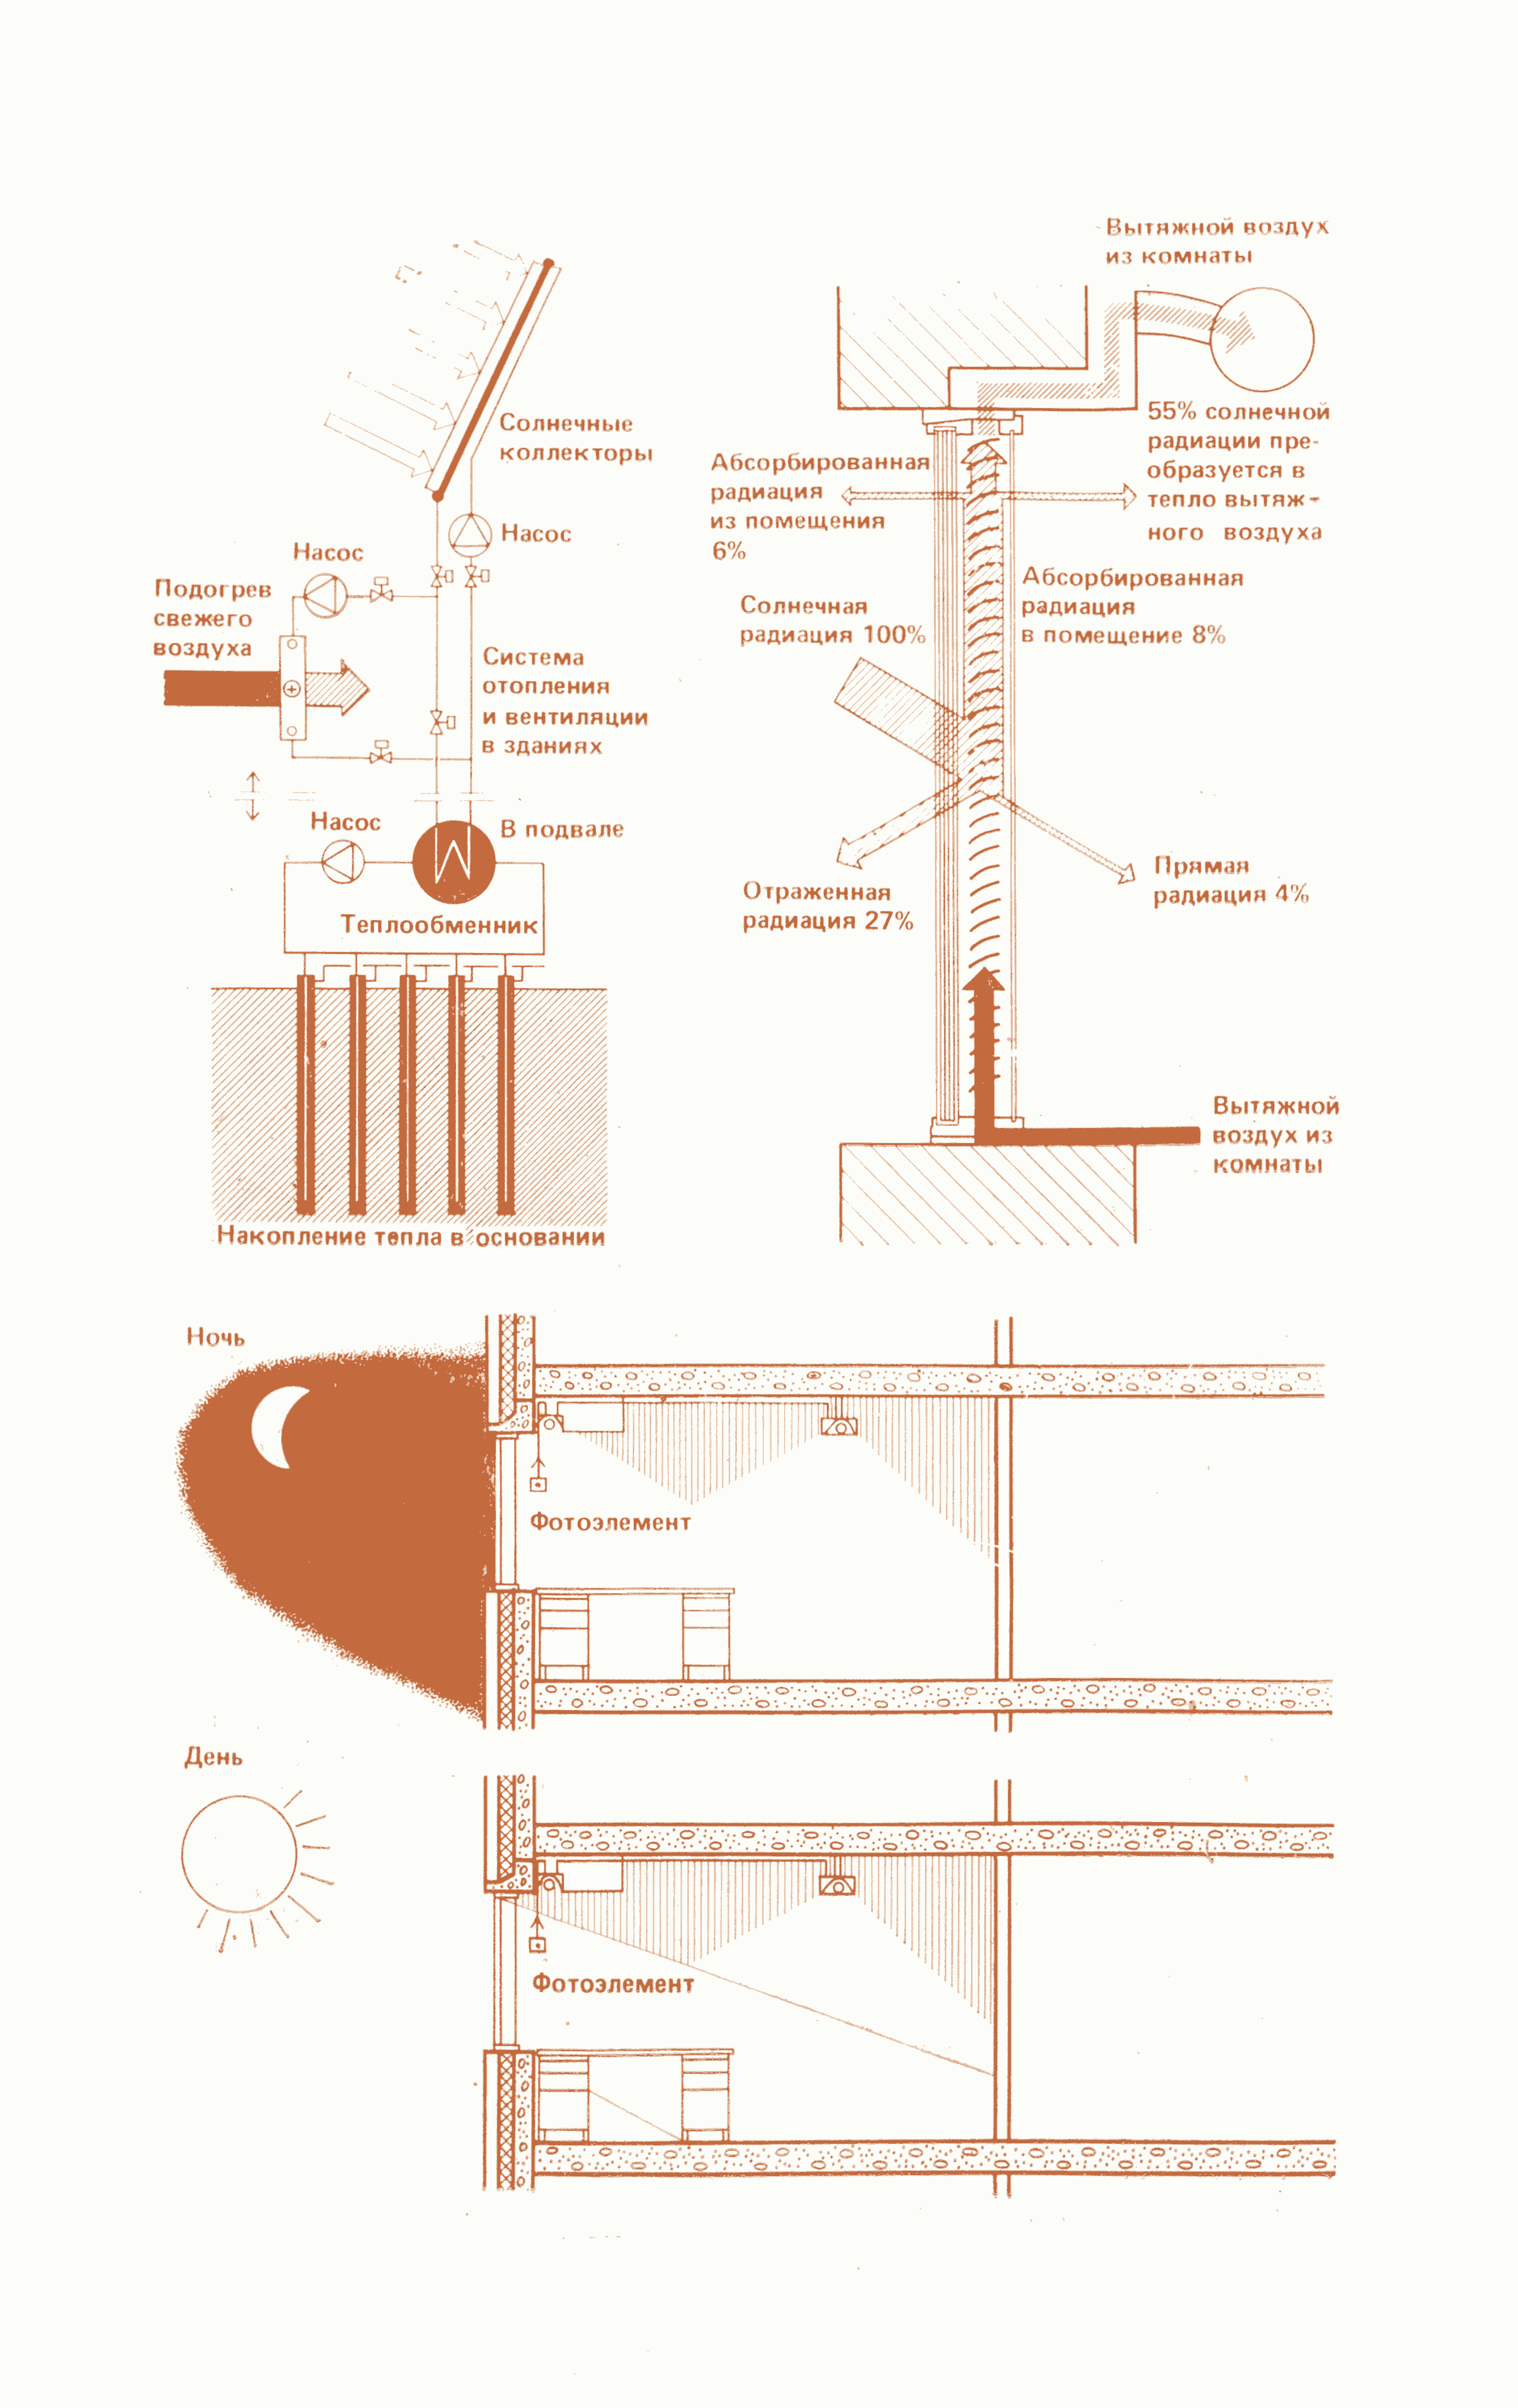 Схема использования солнечной энергии для отопления и вентиляции зданий. Распределение солнечной энергии в окнах, оборудованных вытяжной вентиляцией. Схема совмещенного (естественного и искусственного) освещения помещений.